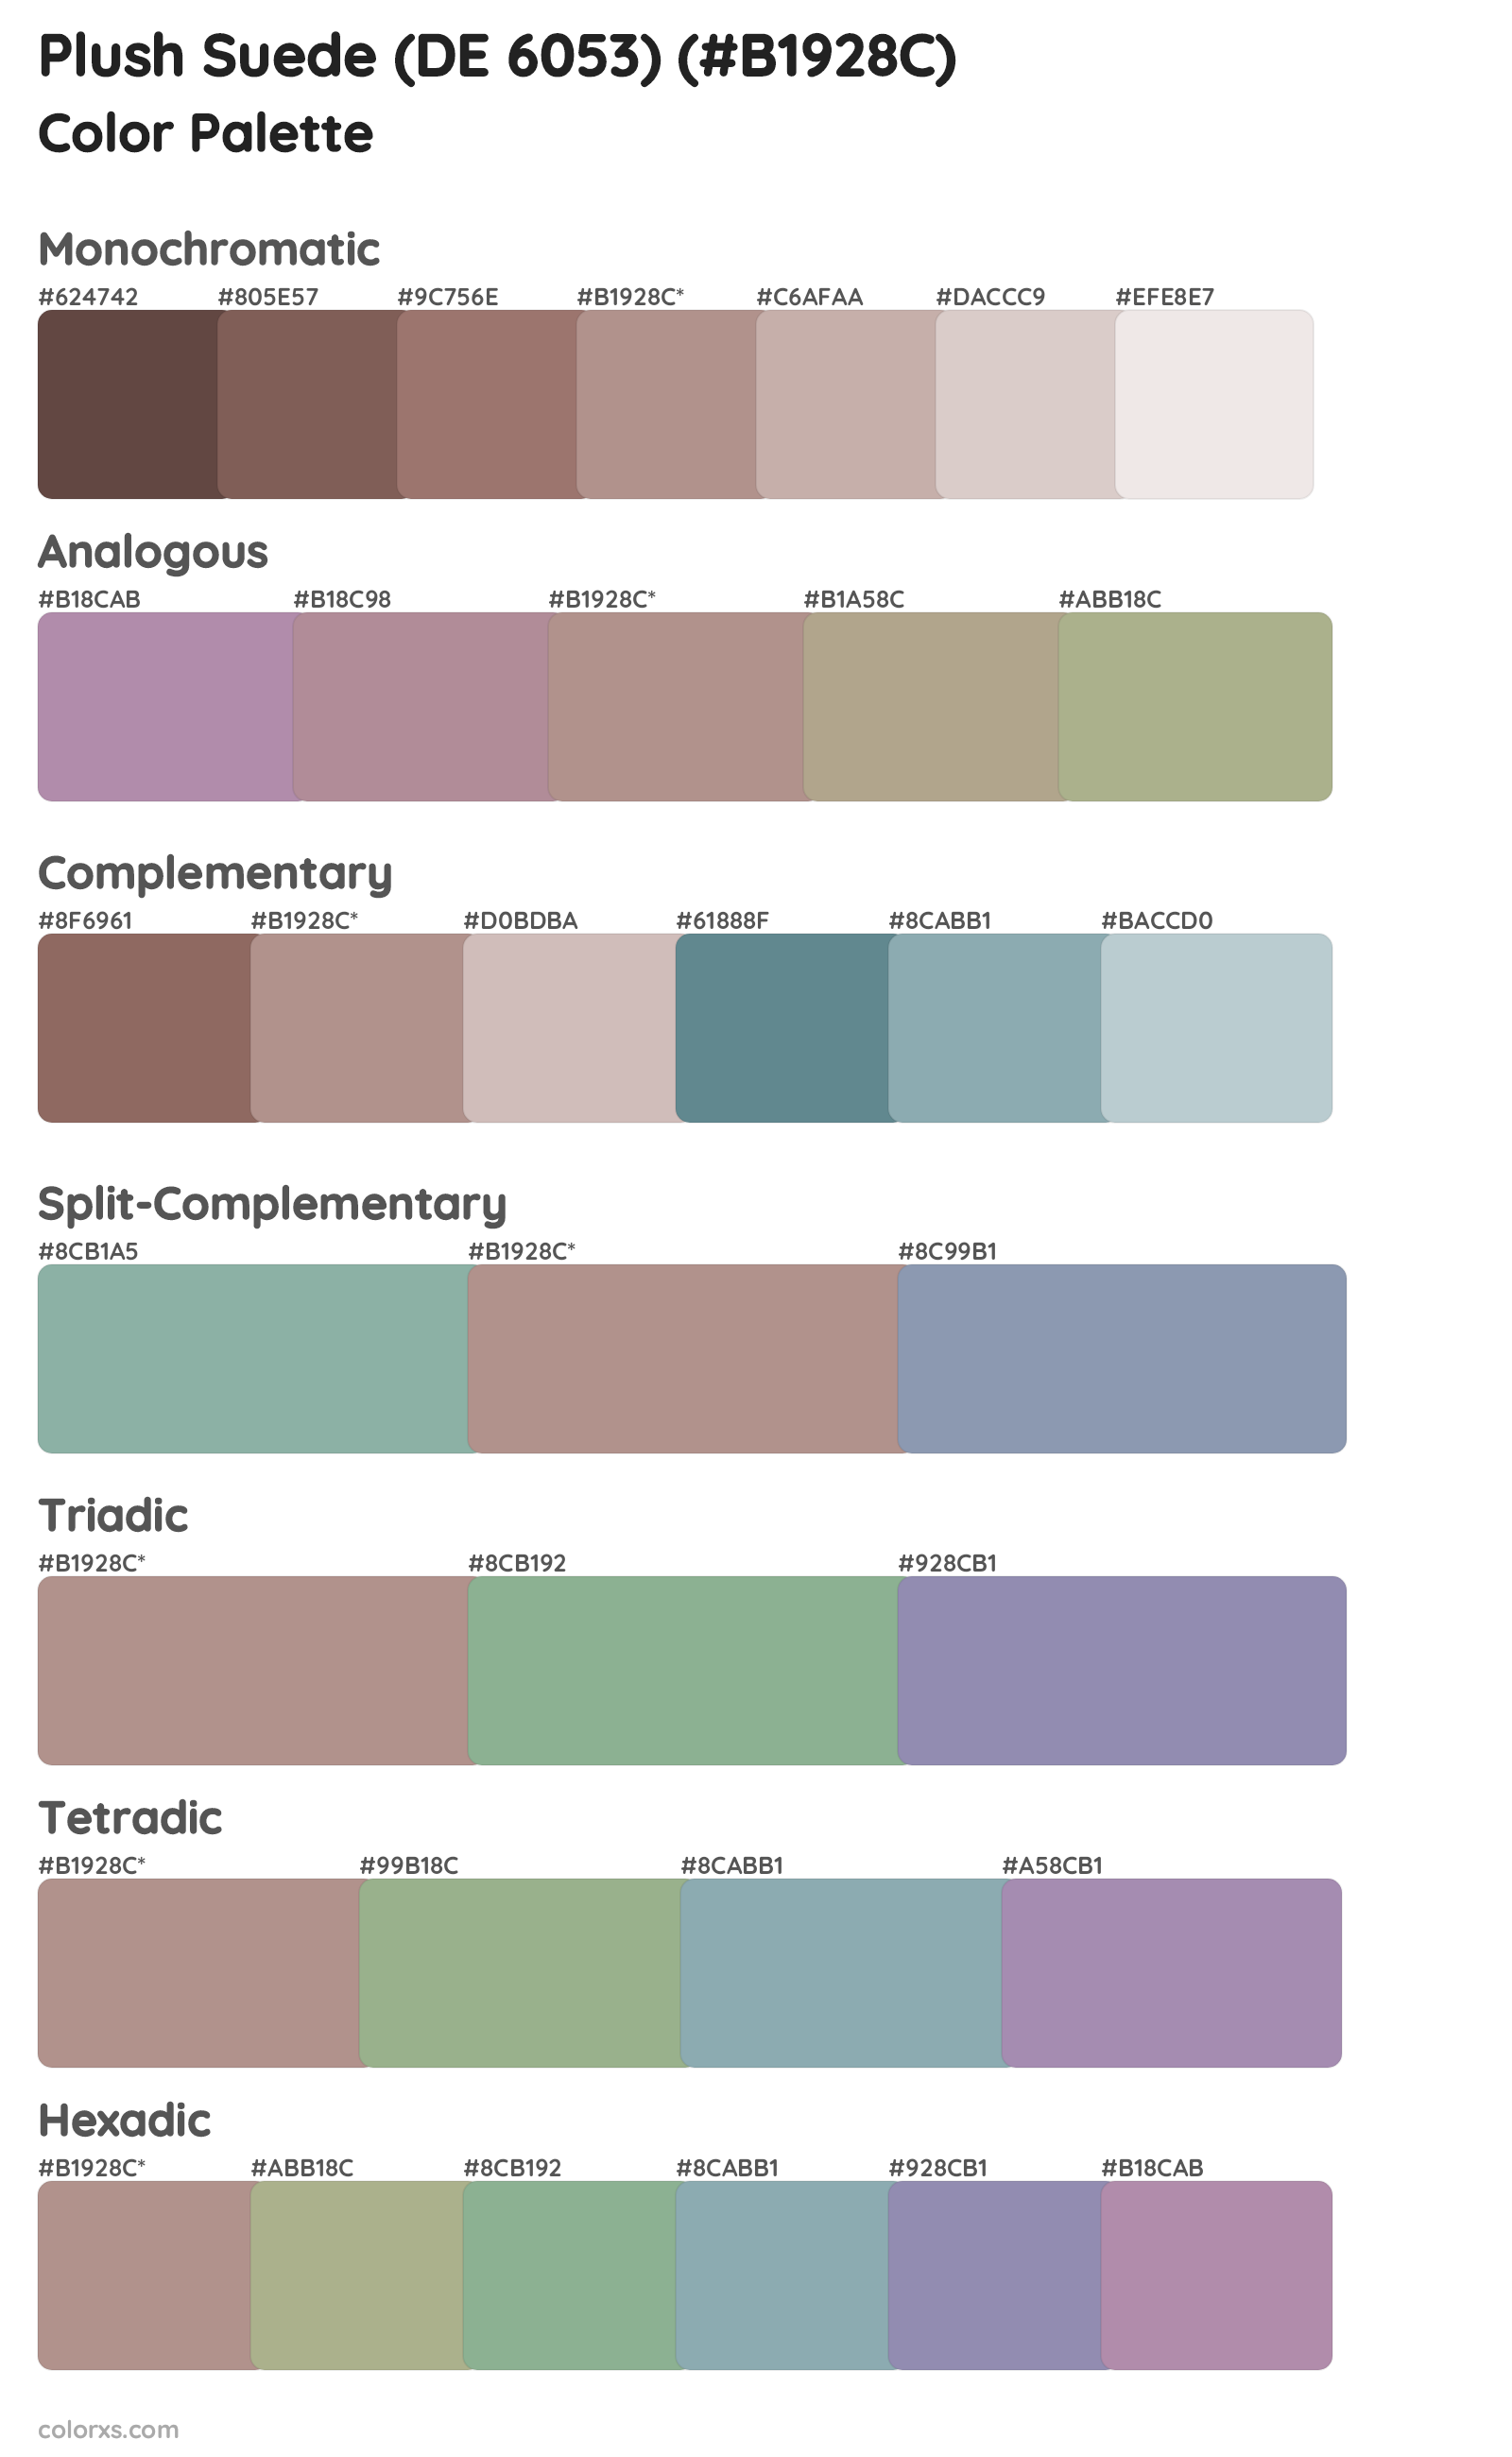 Plush Suede (DE 6053) Color Scheme Palettes